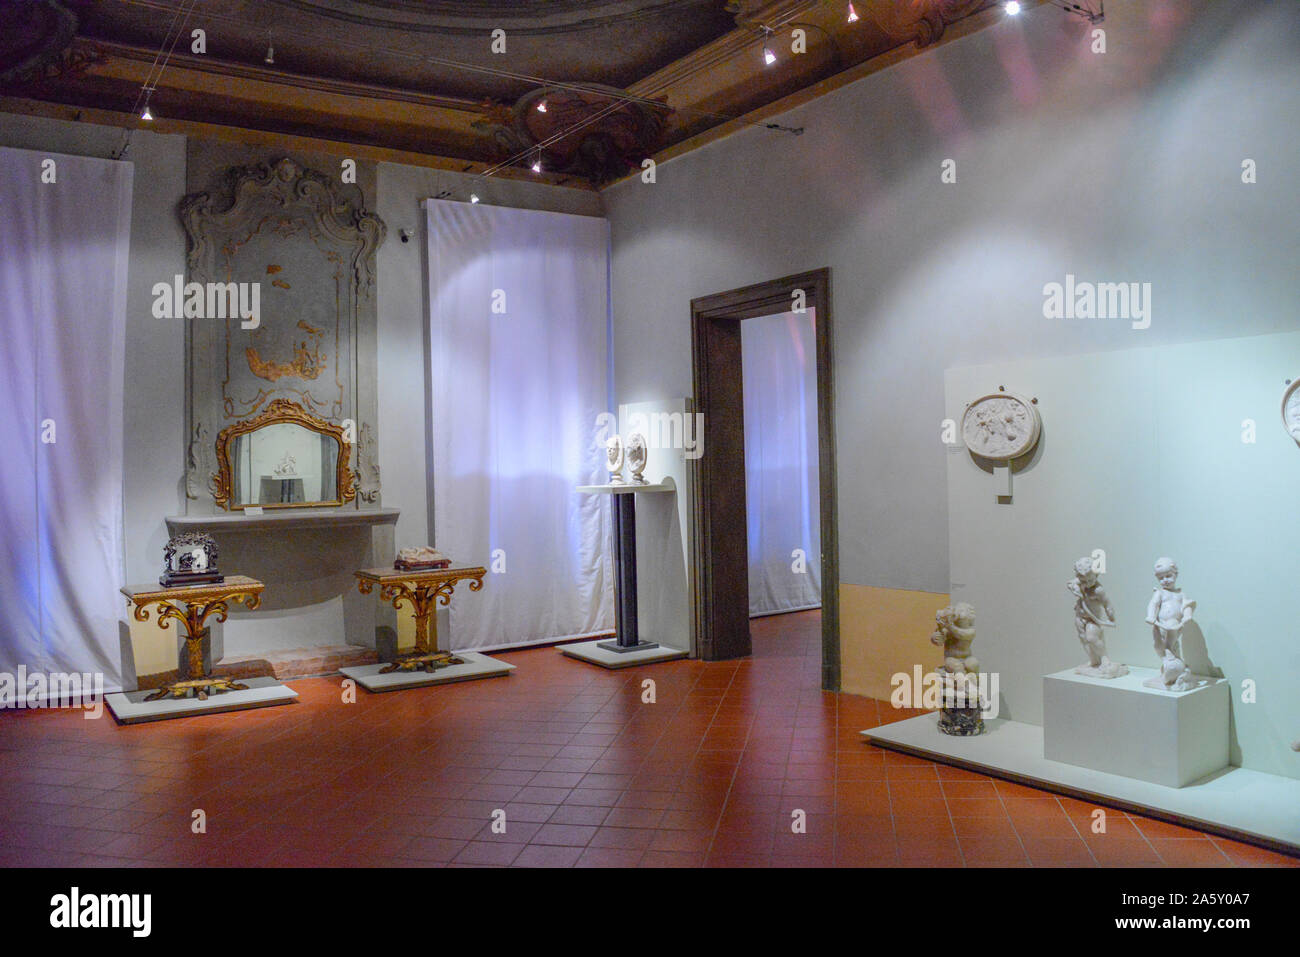 Europe, Italy, Emilia-Romagna, Ferrara, Bonacossi Palace, Civic Museum of Ancient Art Stock Photo